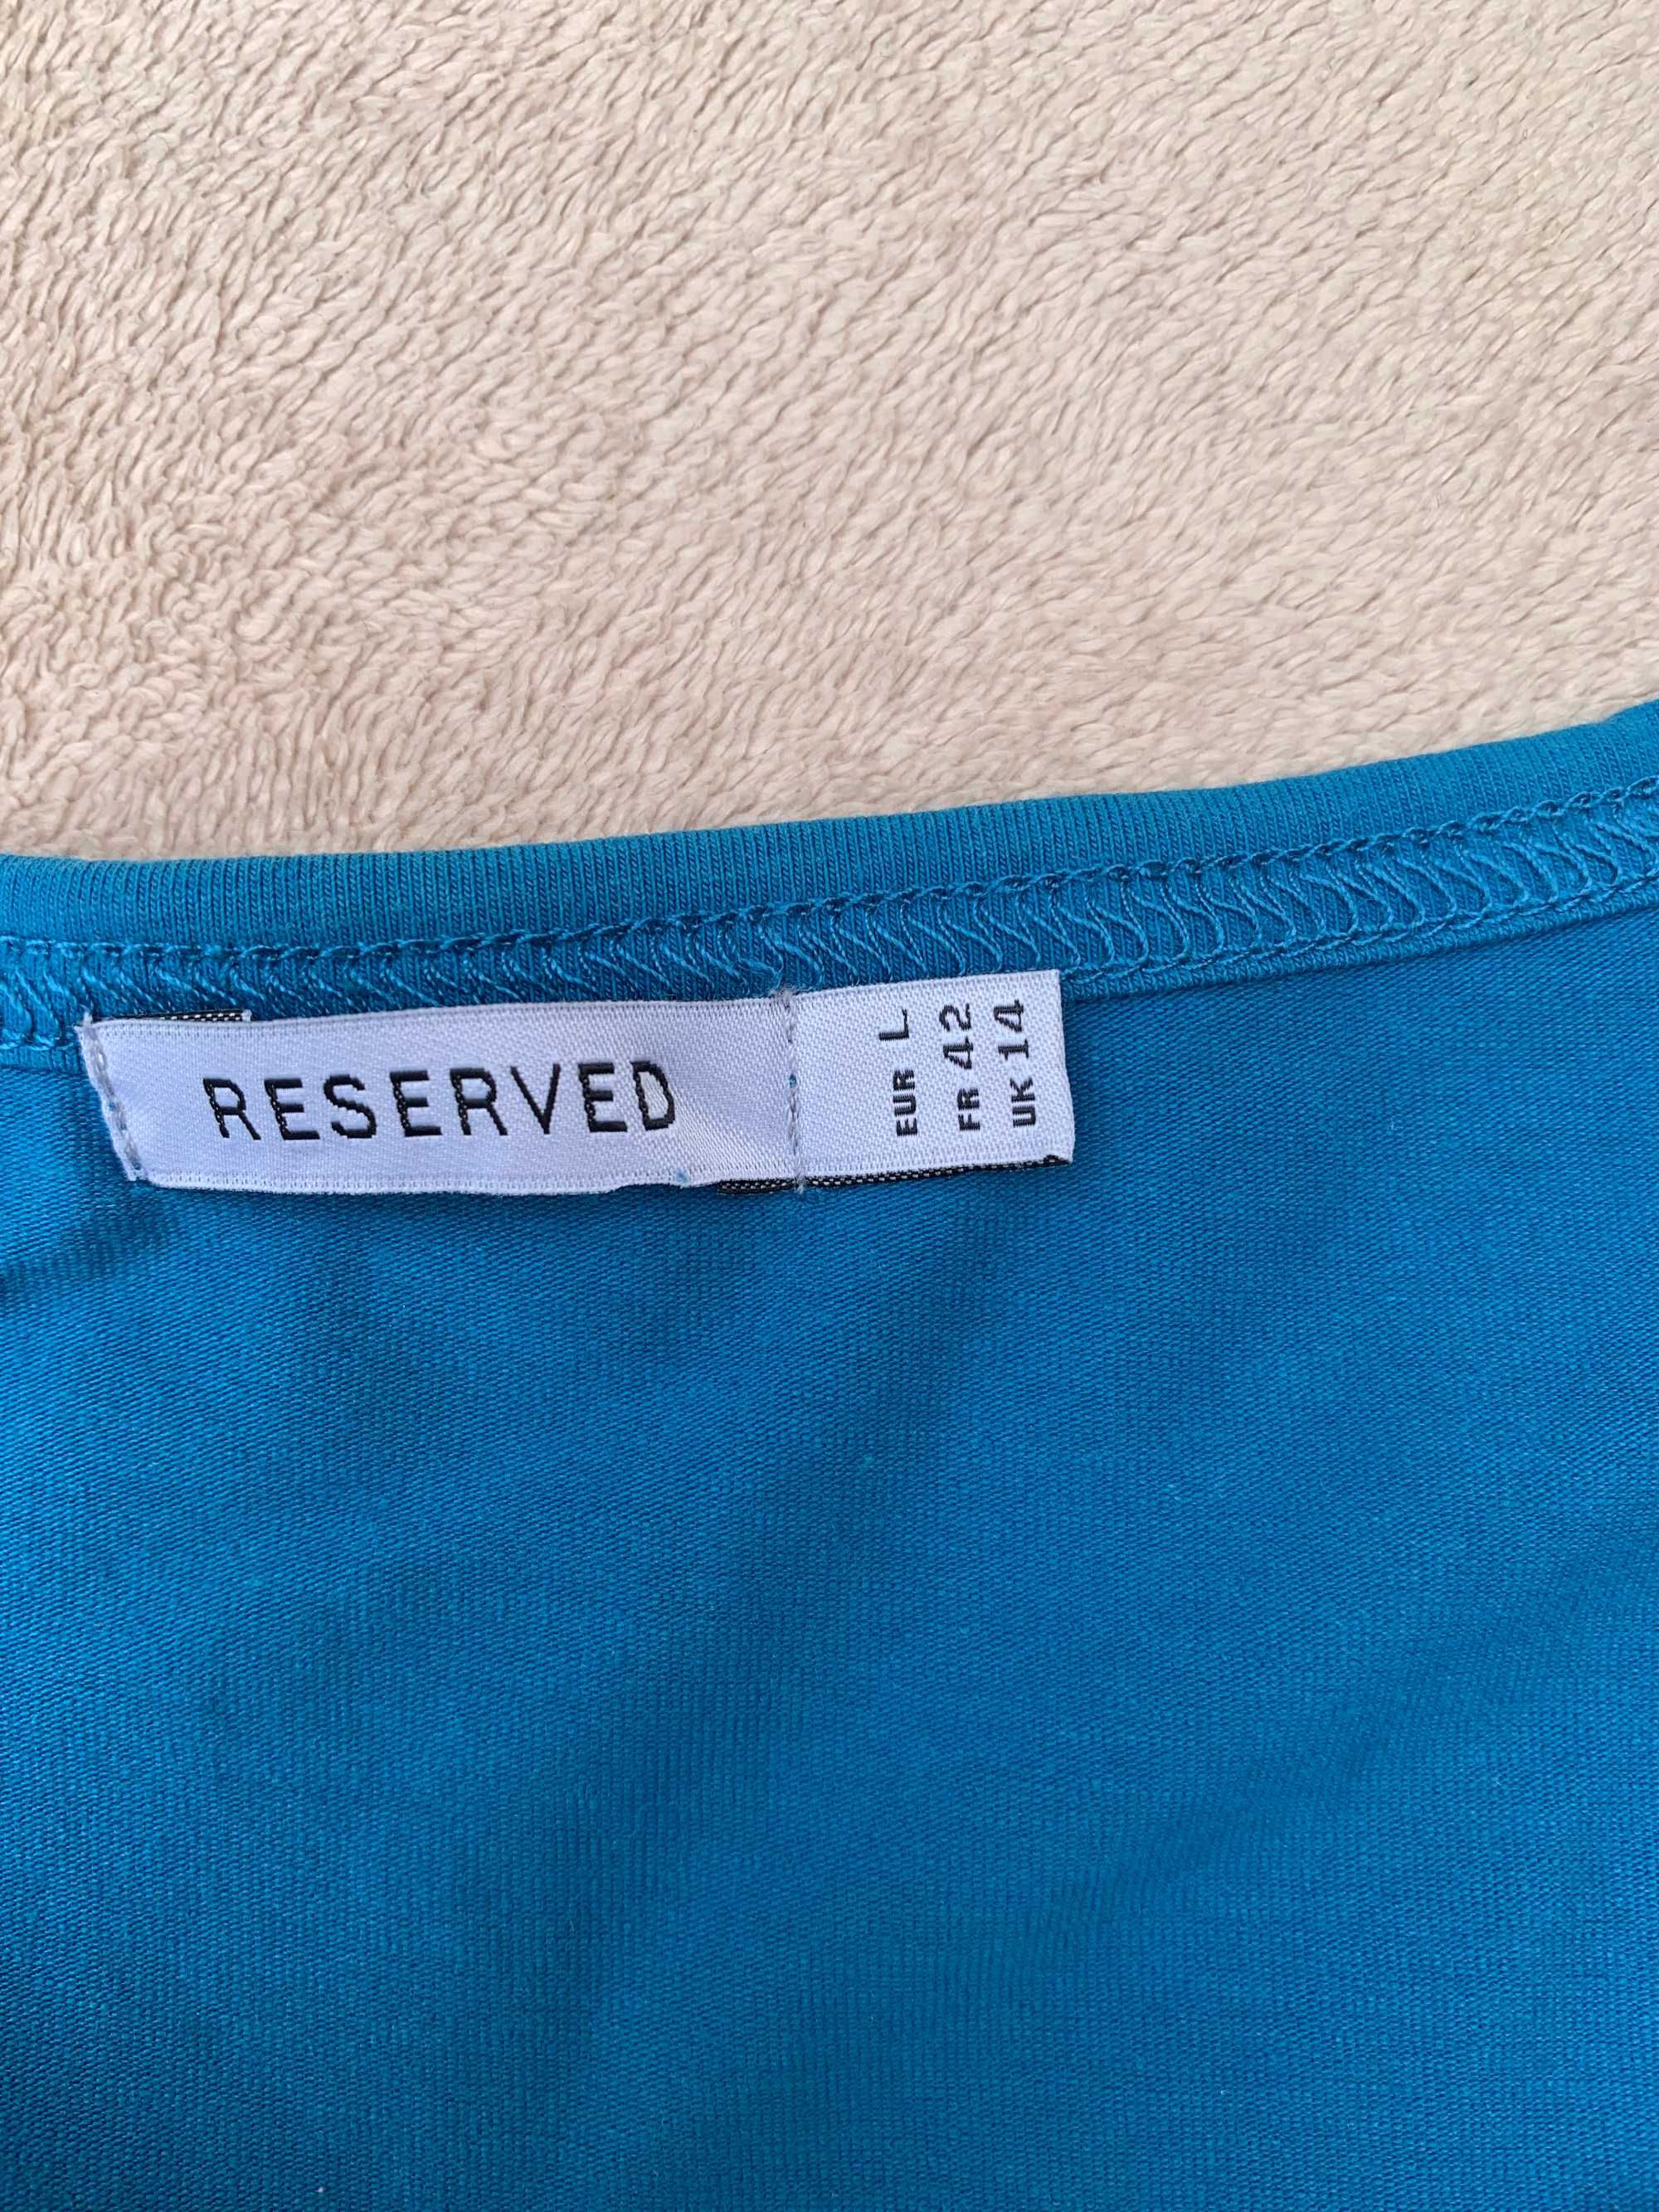 T-shirt Reserved, rozm L niebieski ze srebrnym napisem